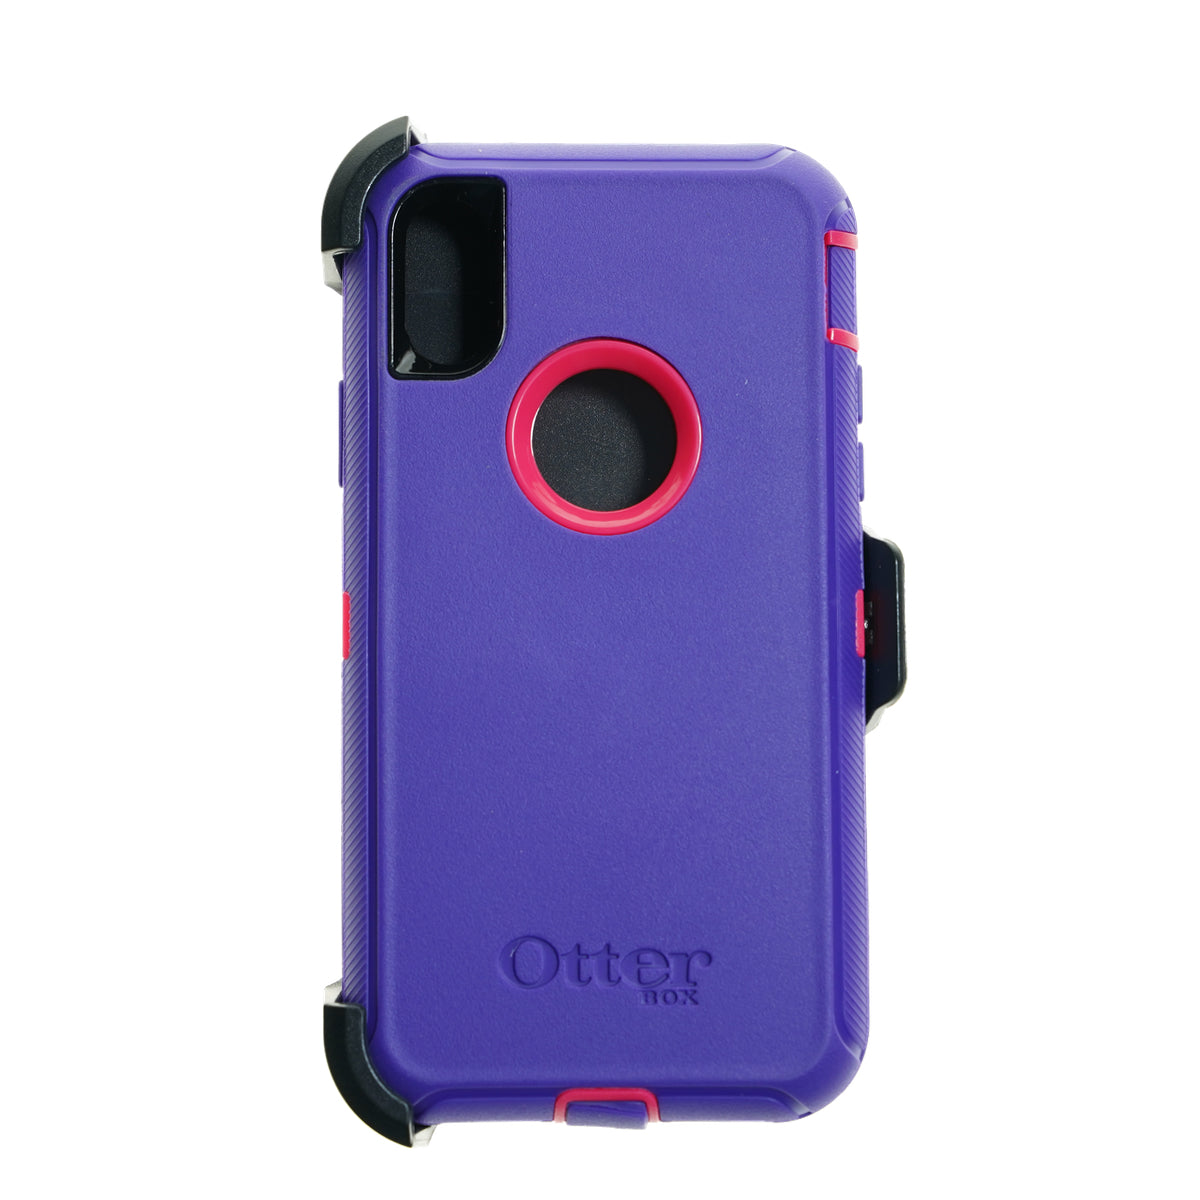 Estuche otterbox defender iphone xr (6.1) color morado / fucsia